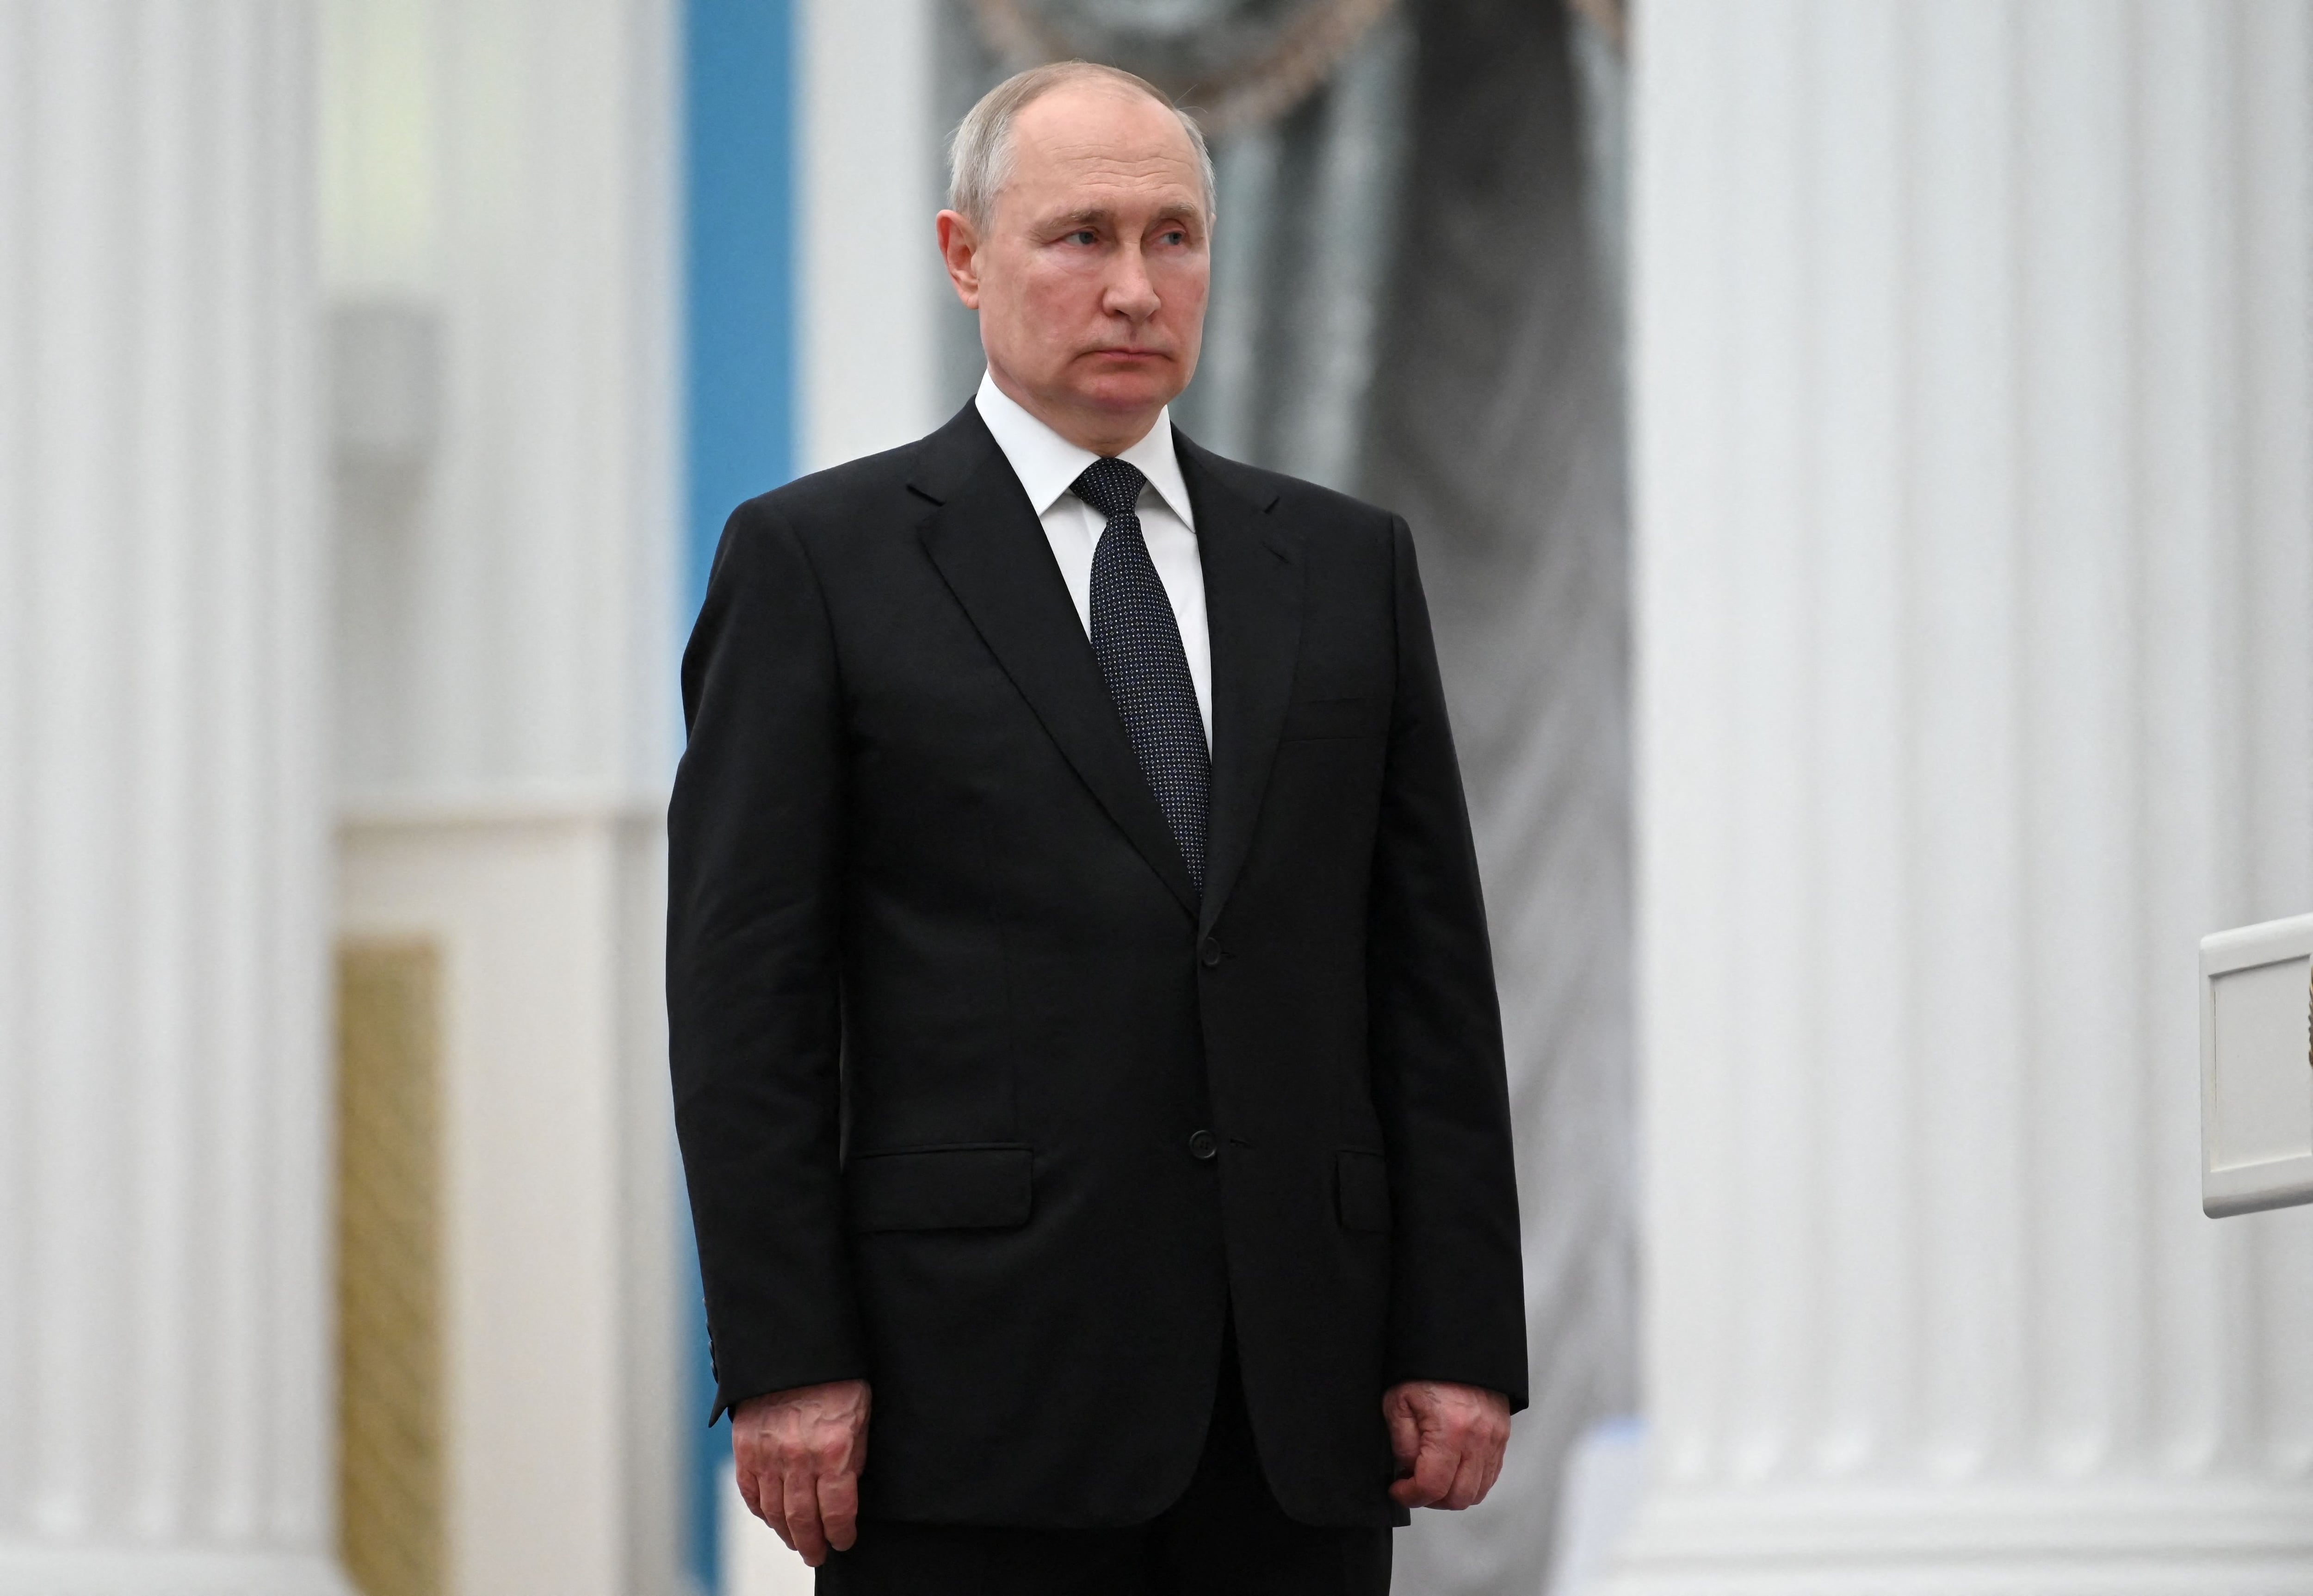 FOTO DE ARCHIVO. El presidente ruso Vladimir Putin asiste a una ceremonia para entregar premios estatales en Moscú, Rusia, el 2 de agosto de 2023. Sputnik/Alexander Kazakov/Kremlin vía REUTERS